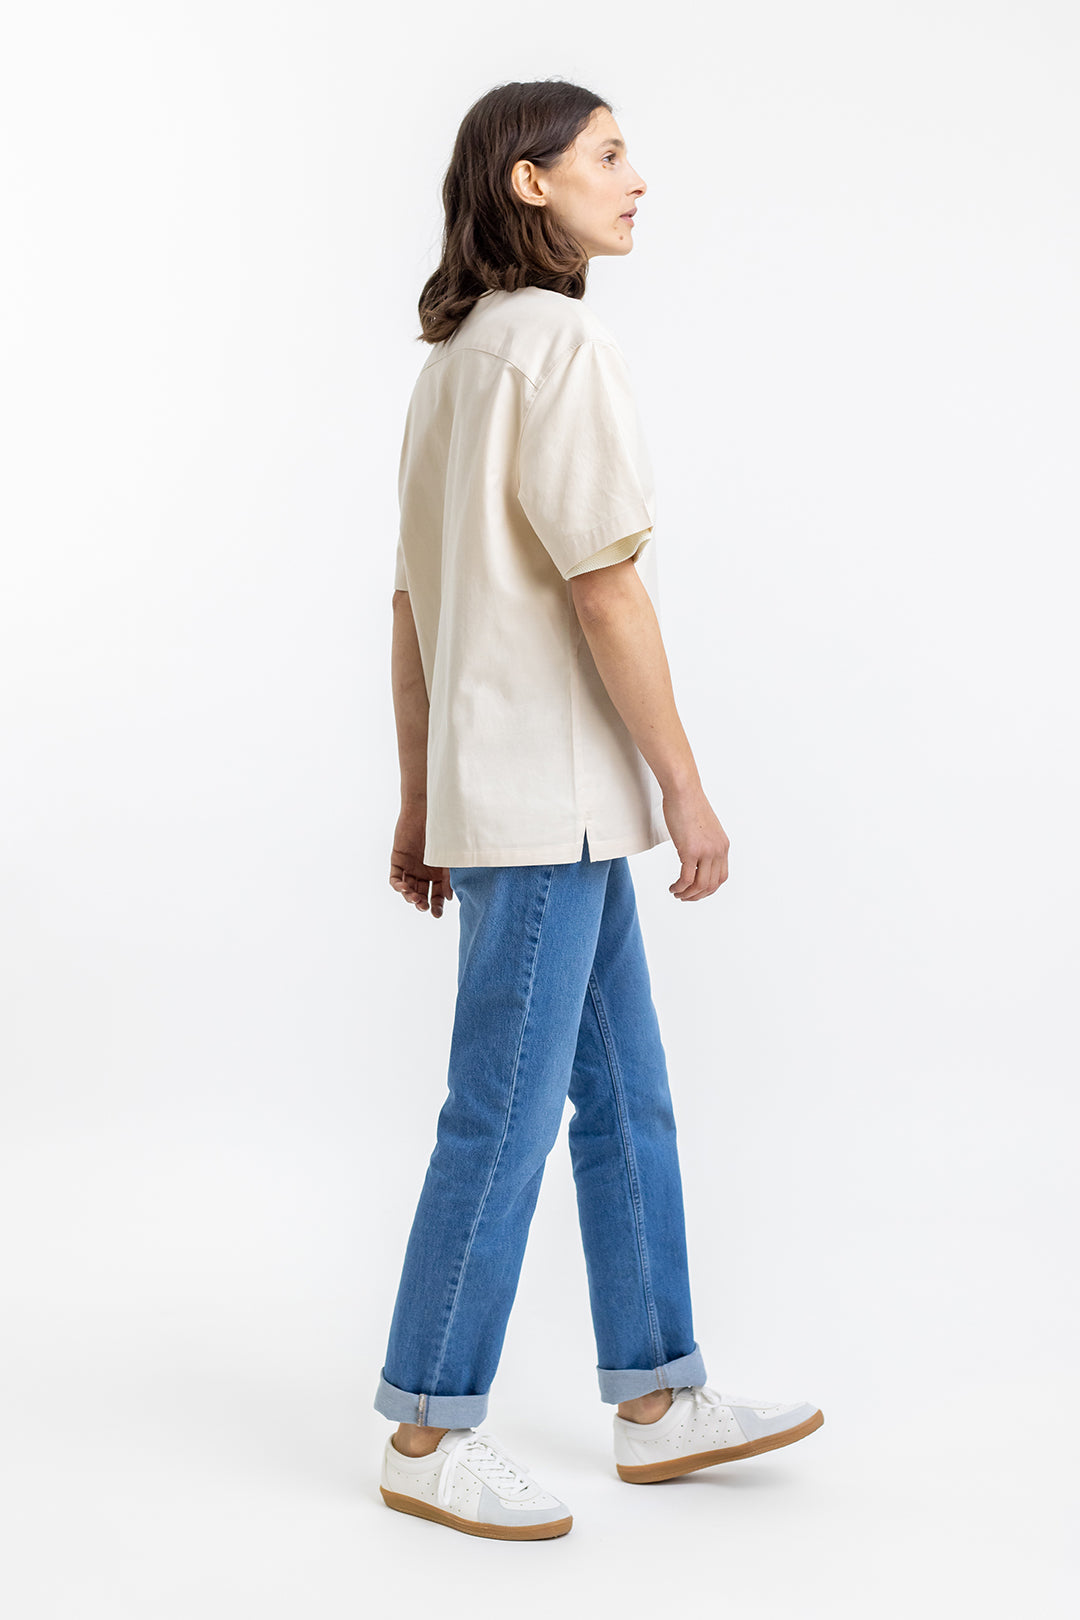 Weisses, kurzärmliges Bowling-Hemd aus 100% Bio-Baumwolle von Rotholz